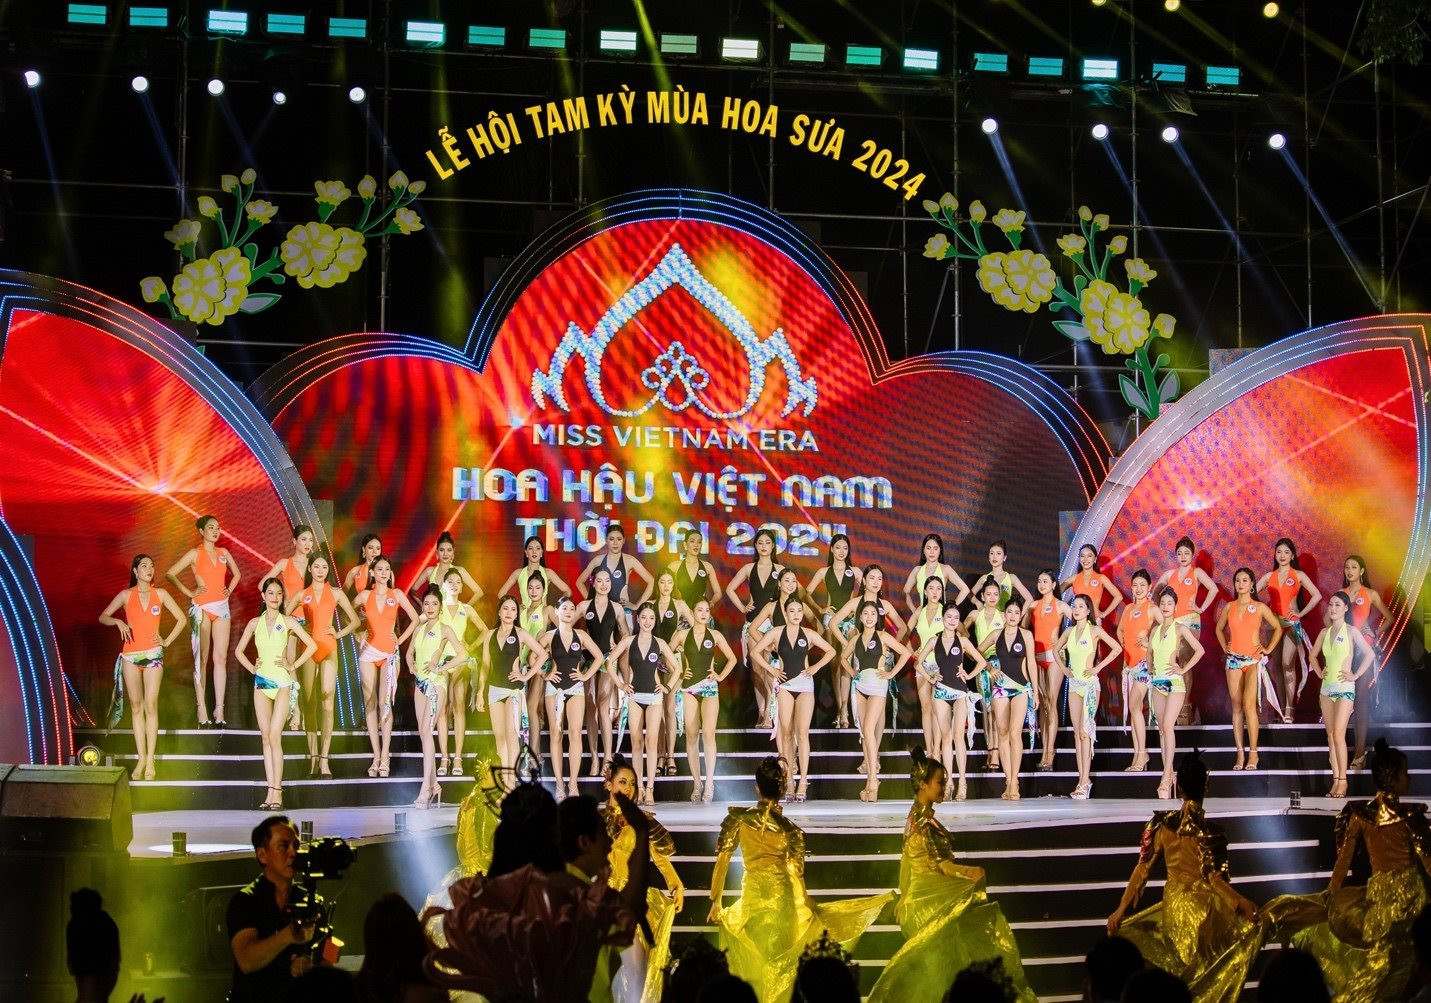 30 thí sinh vào chung kết Hoa hậu Việt Nam Thời đại 2024